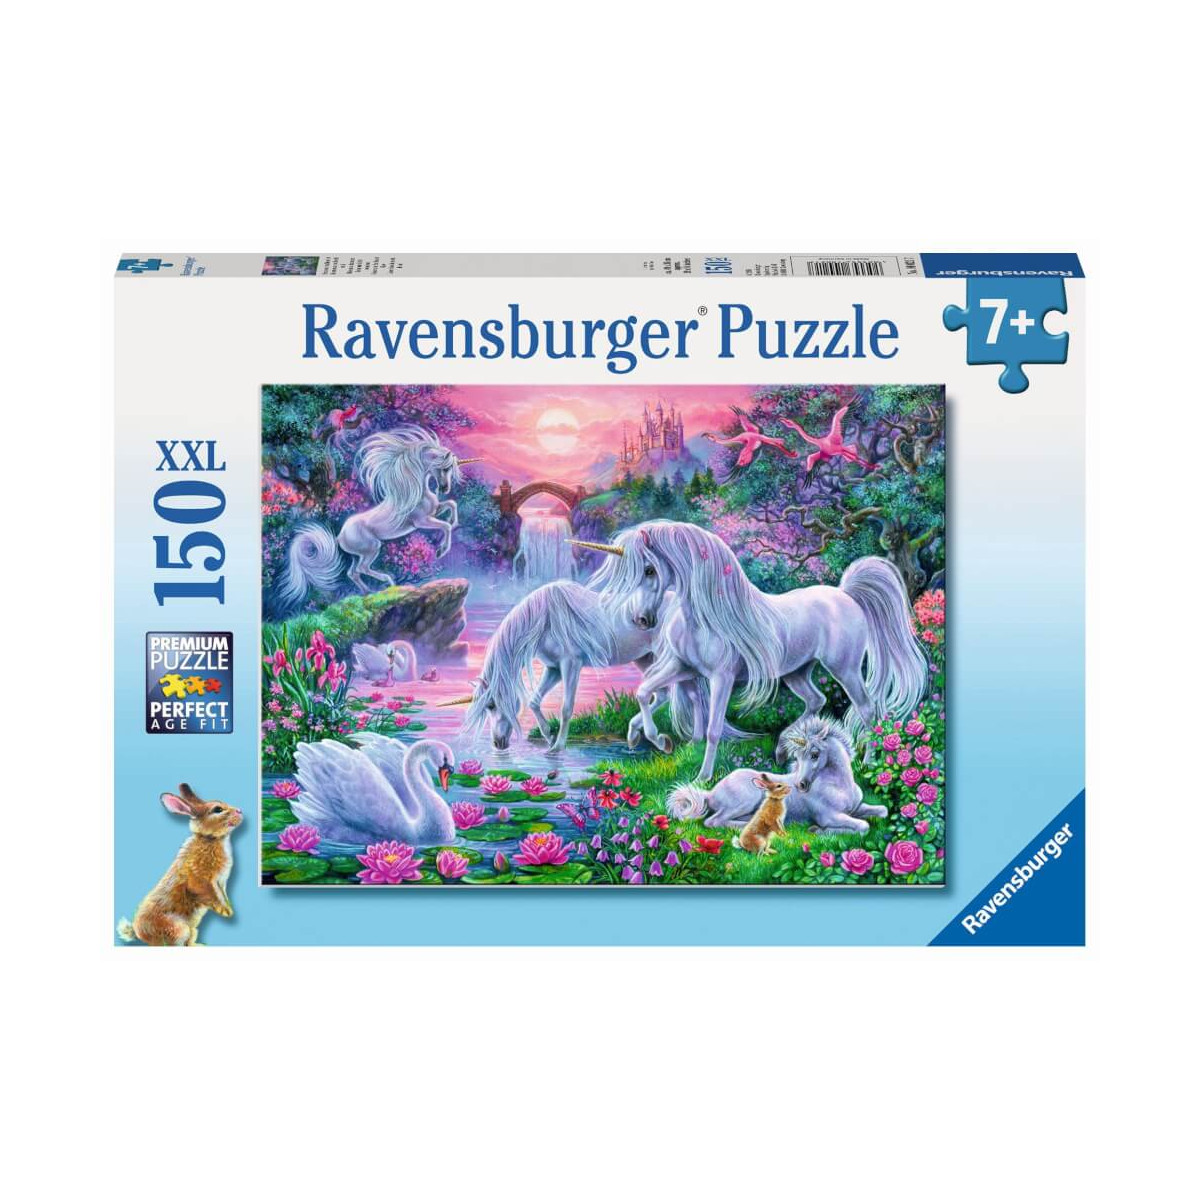 Ravensburger Kinderpuzzle   10021 Einhörner im Abendrot   Fantasy Puzzle für Kinder ab 7 Jahren, mit